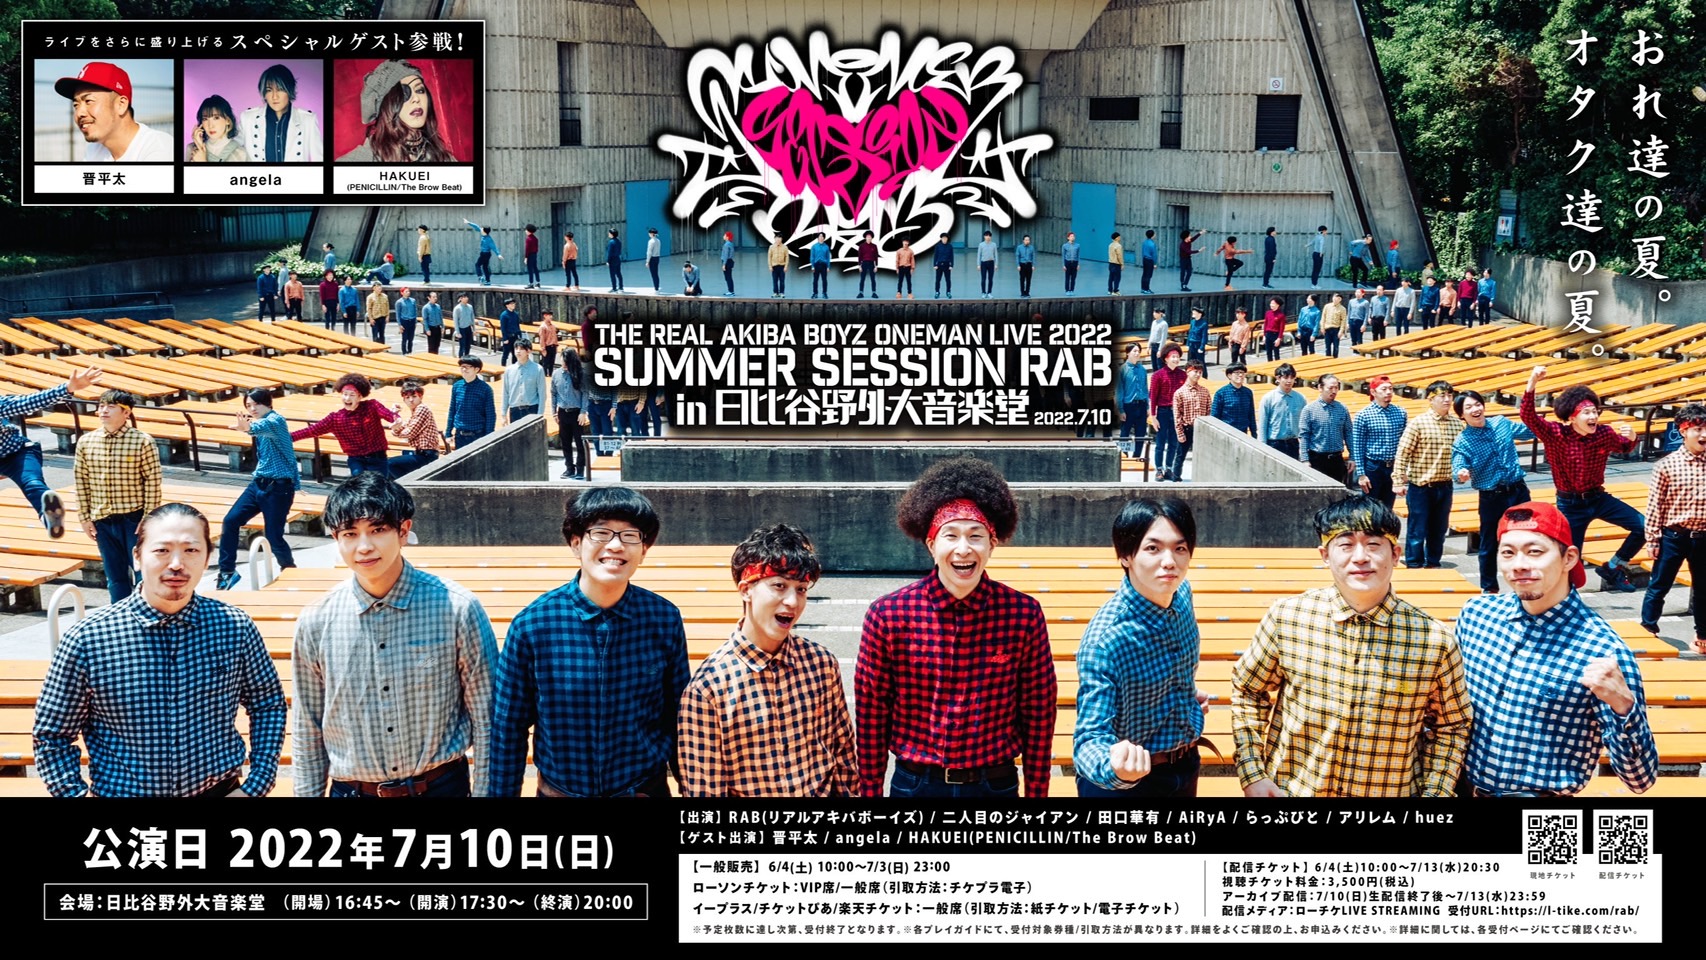 7月10日 SUMMER SESSION RAB IN 日比谷野外大音楽堂公演決定